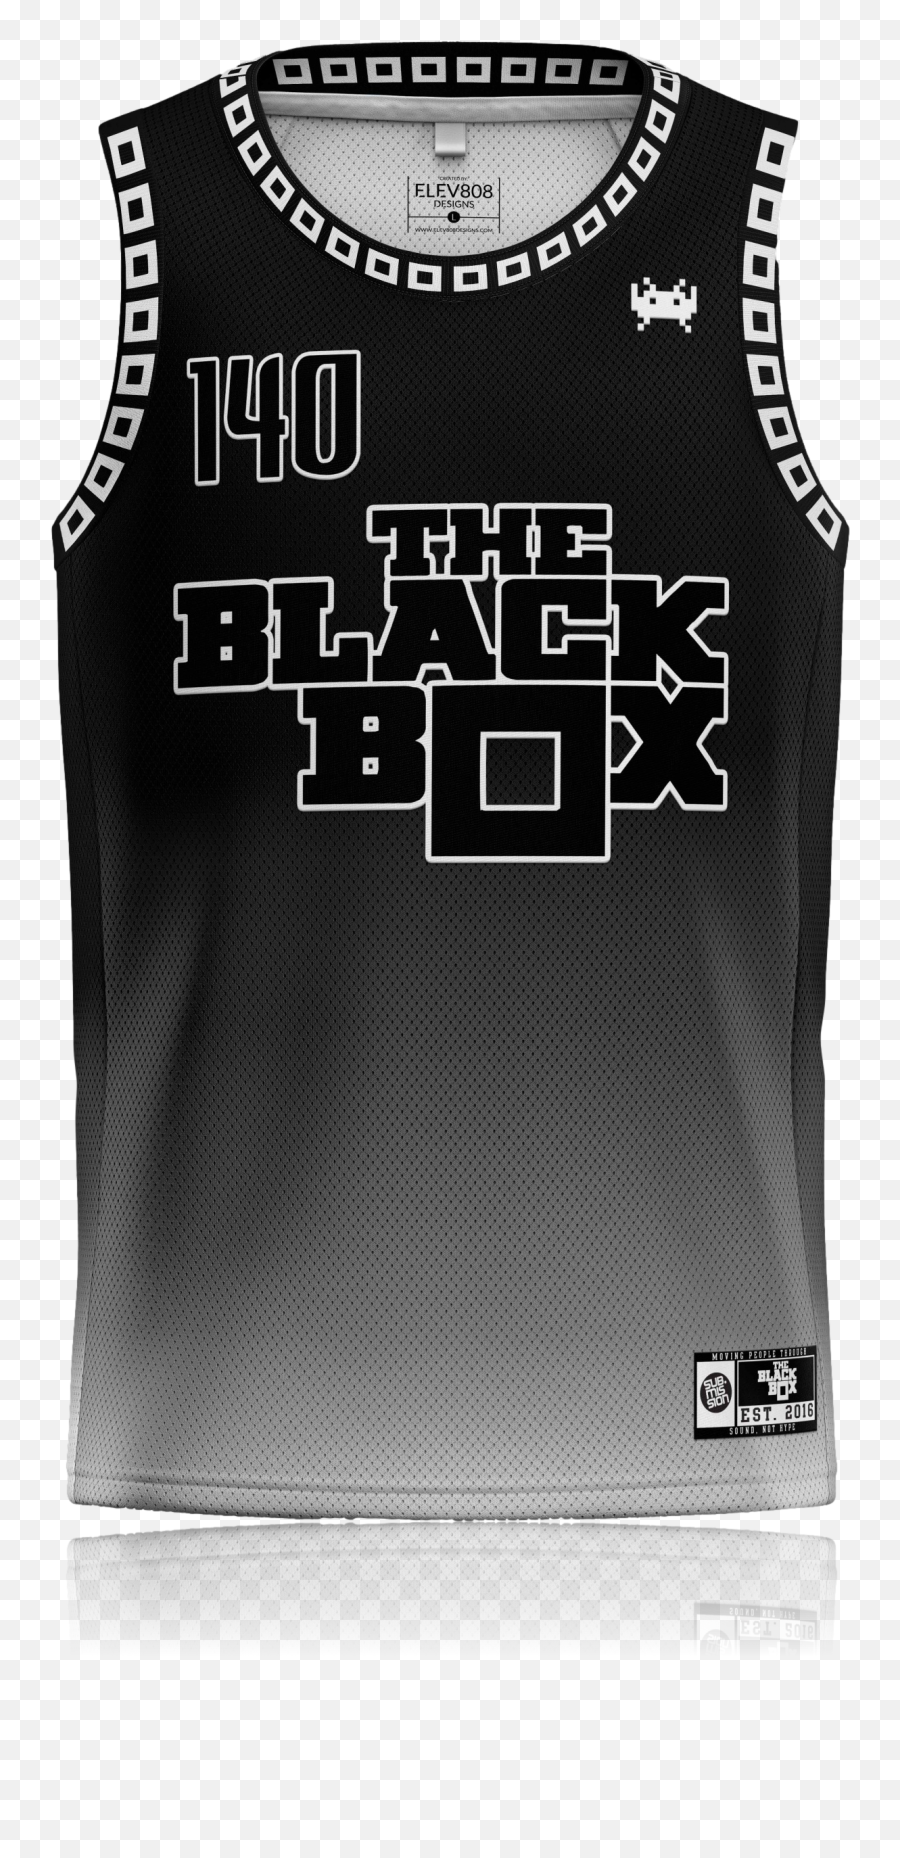 Black Box Basketball Jersey - Sleeveless Emoji,Emotion Regulation Michigan State Basketball